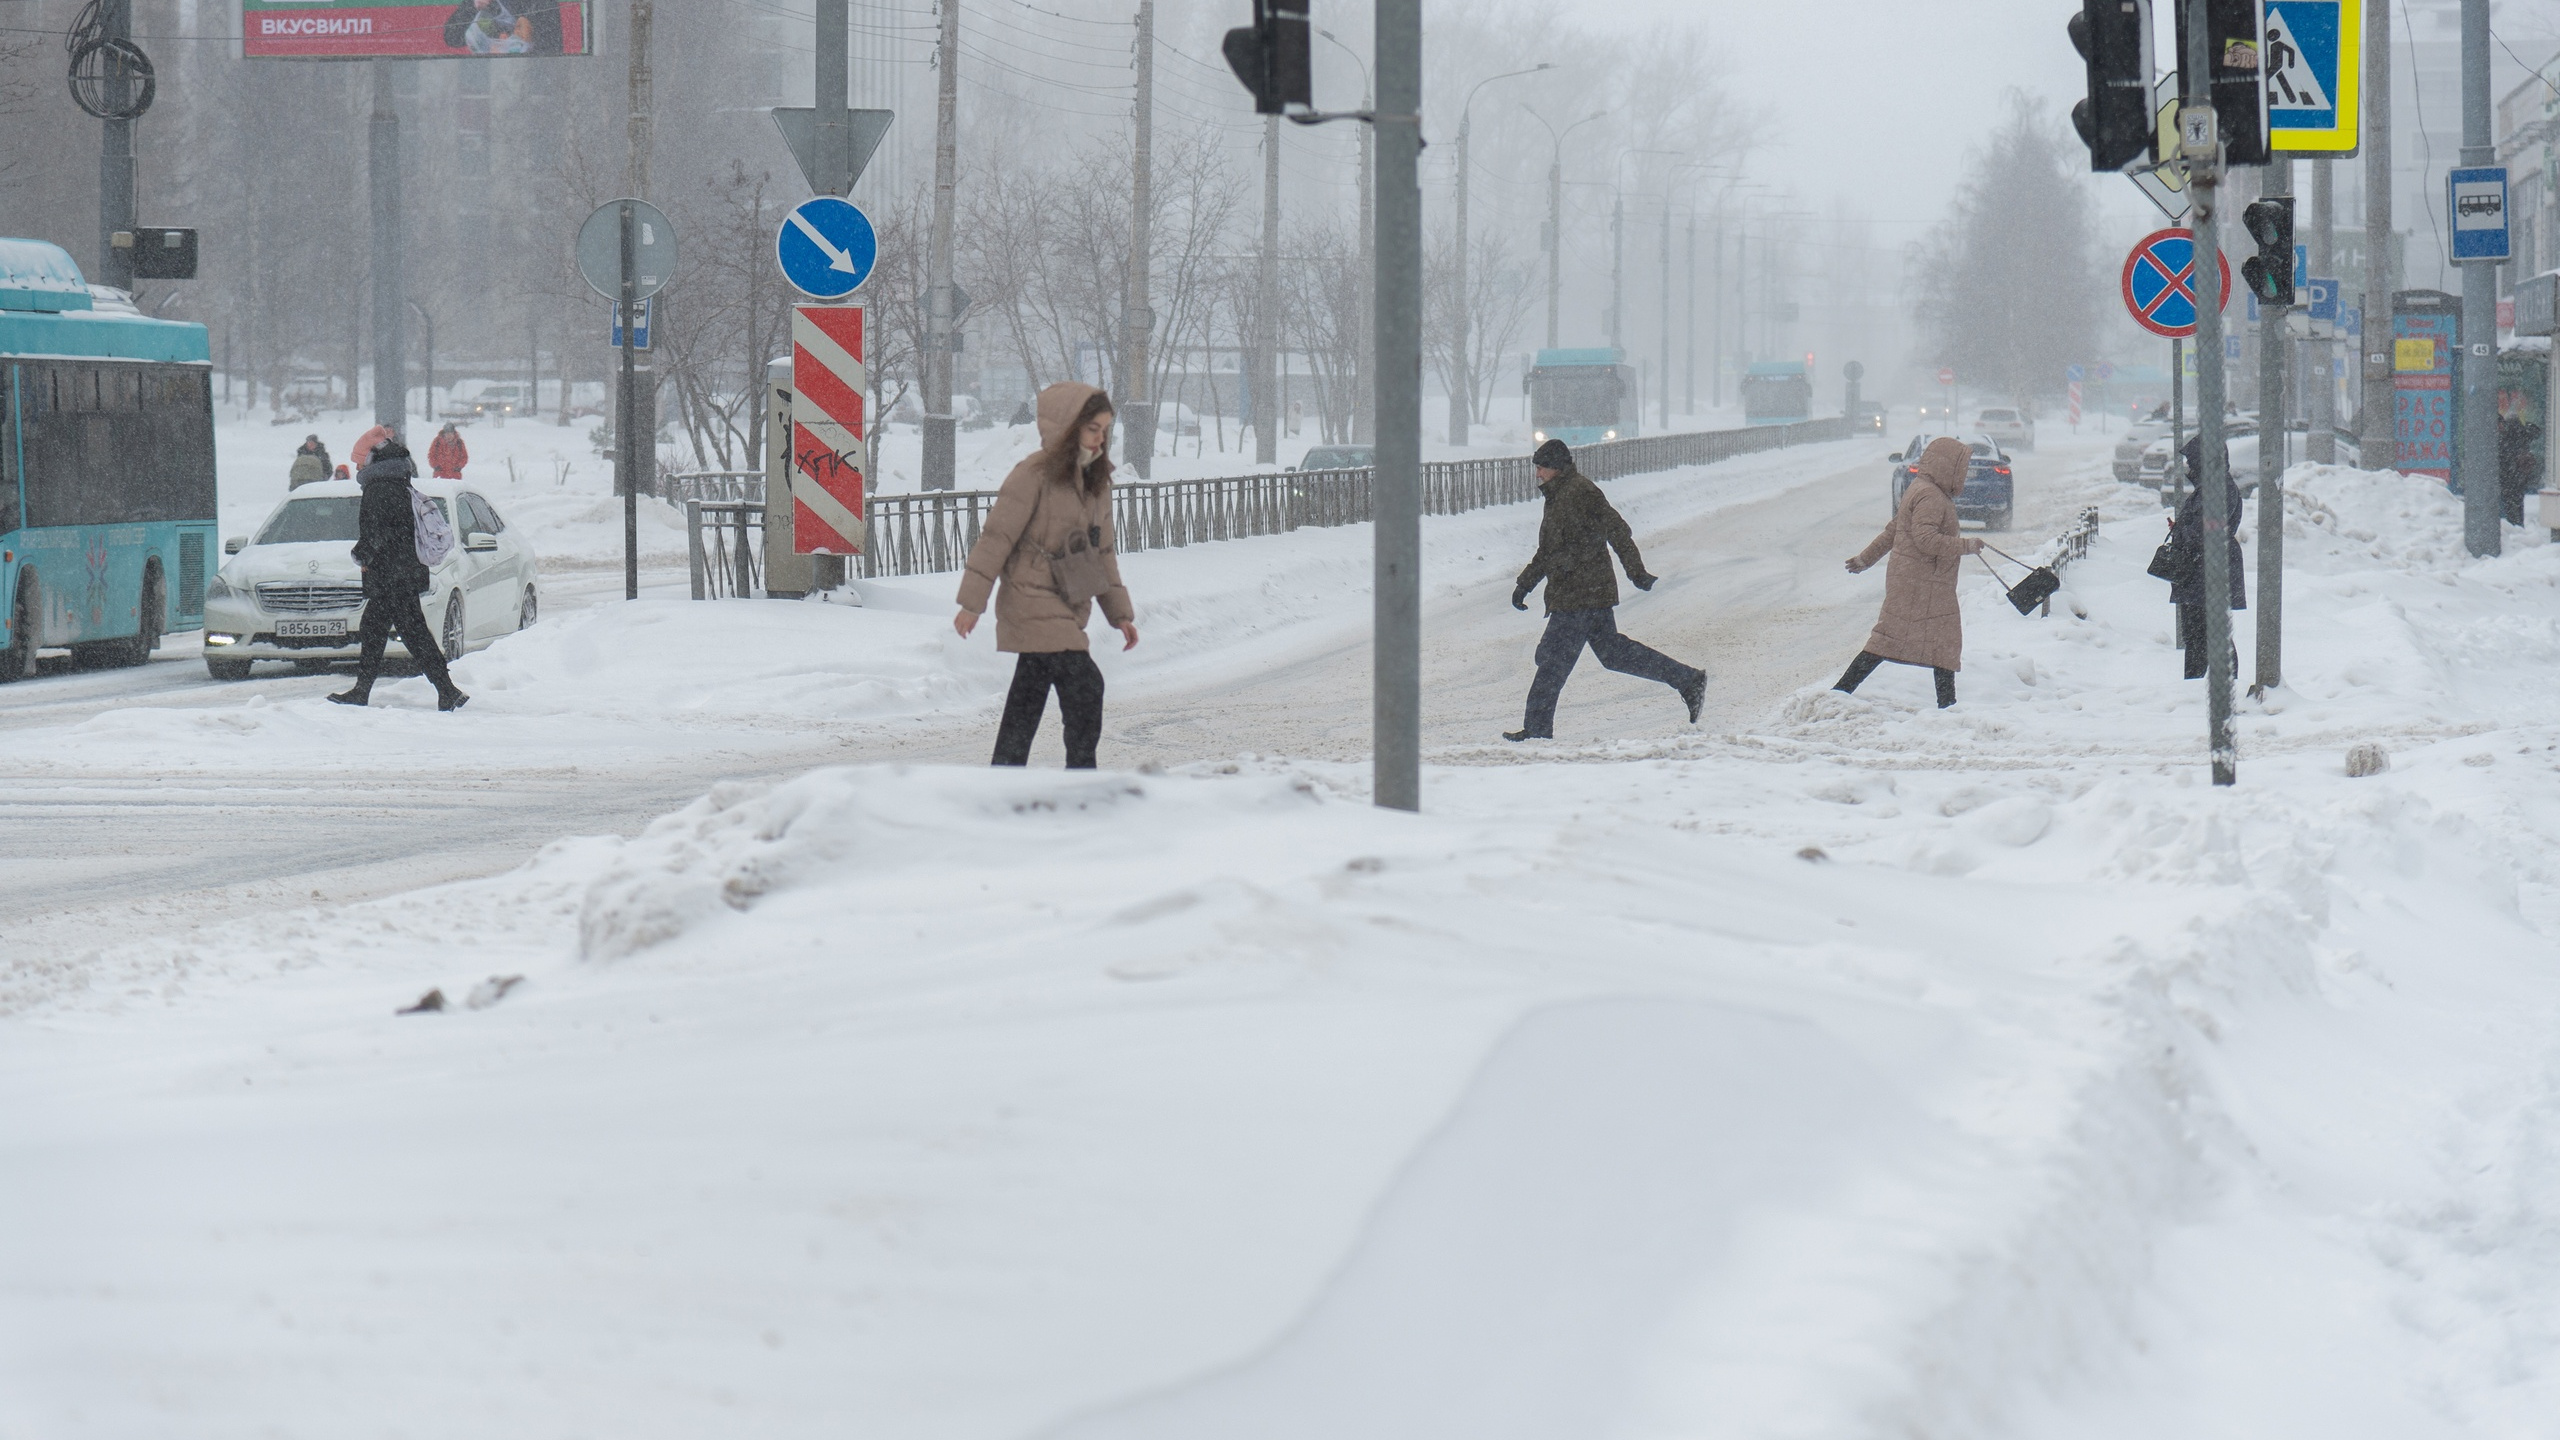 Архангельск завалило снегом: куда жаловаться на плохую уборку улиц